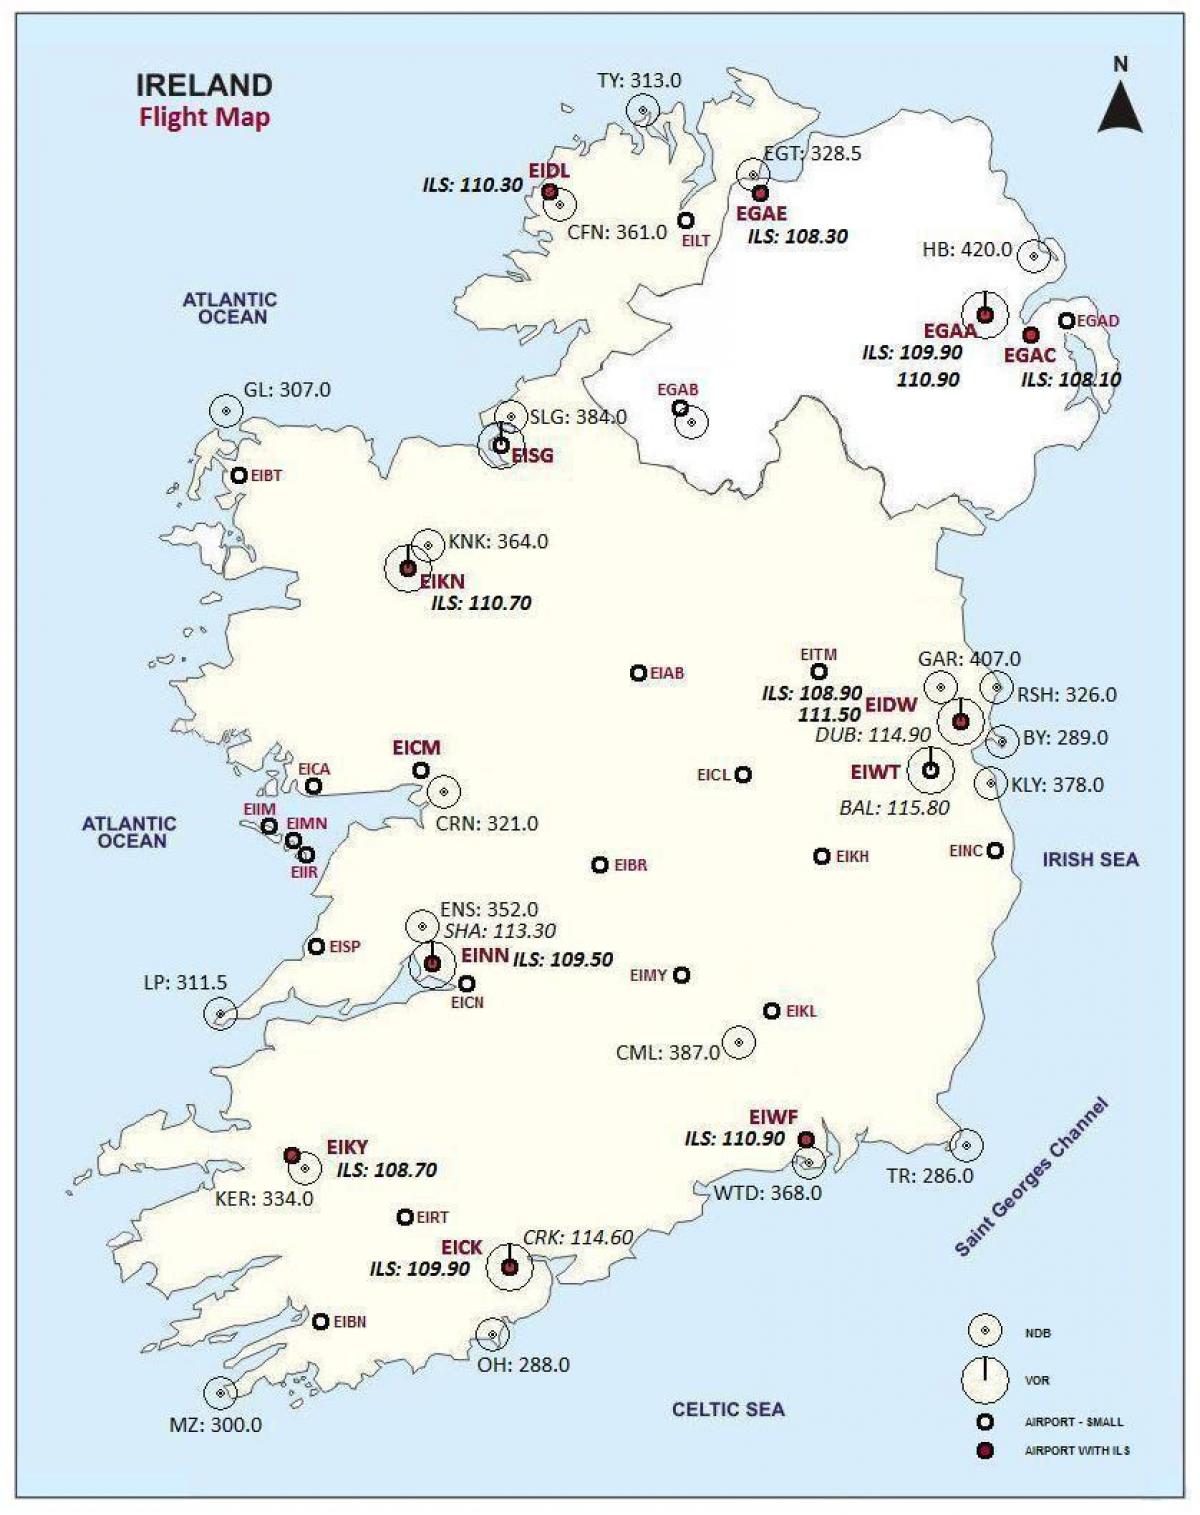 kaart van ierland tonen luchthavens